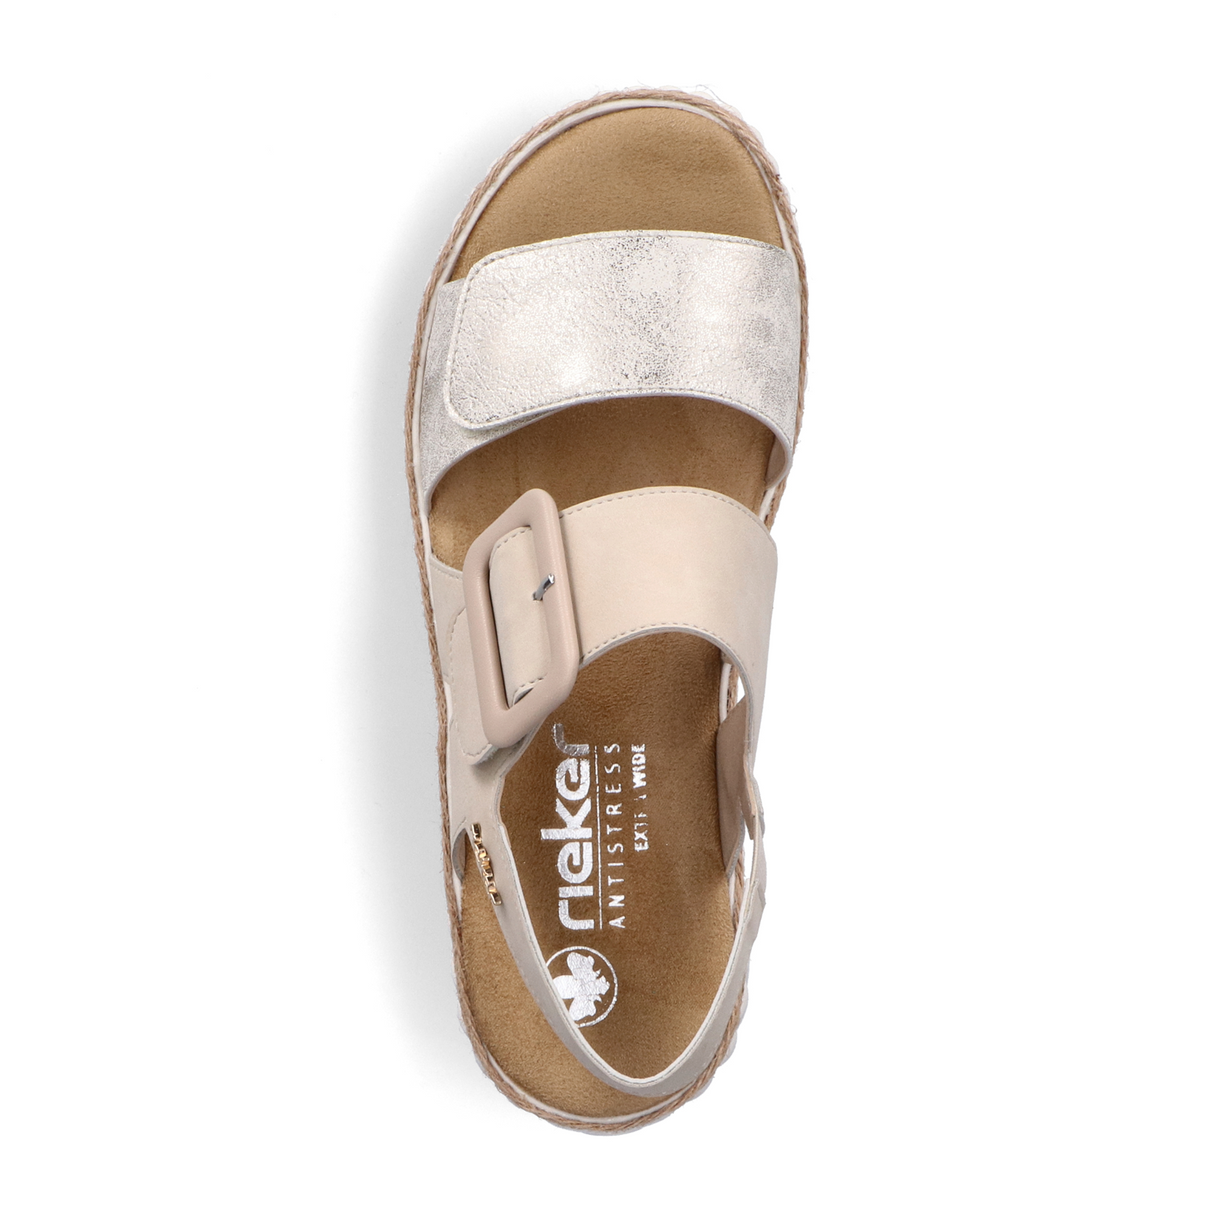 Rieker 69260 Rachel Wedge Sandal (Women) - Beige Gold Sandals - Heel/Wedge - The Heel Shoe Fitters